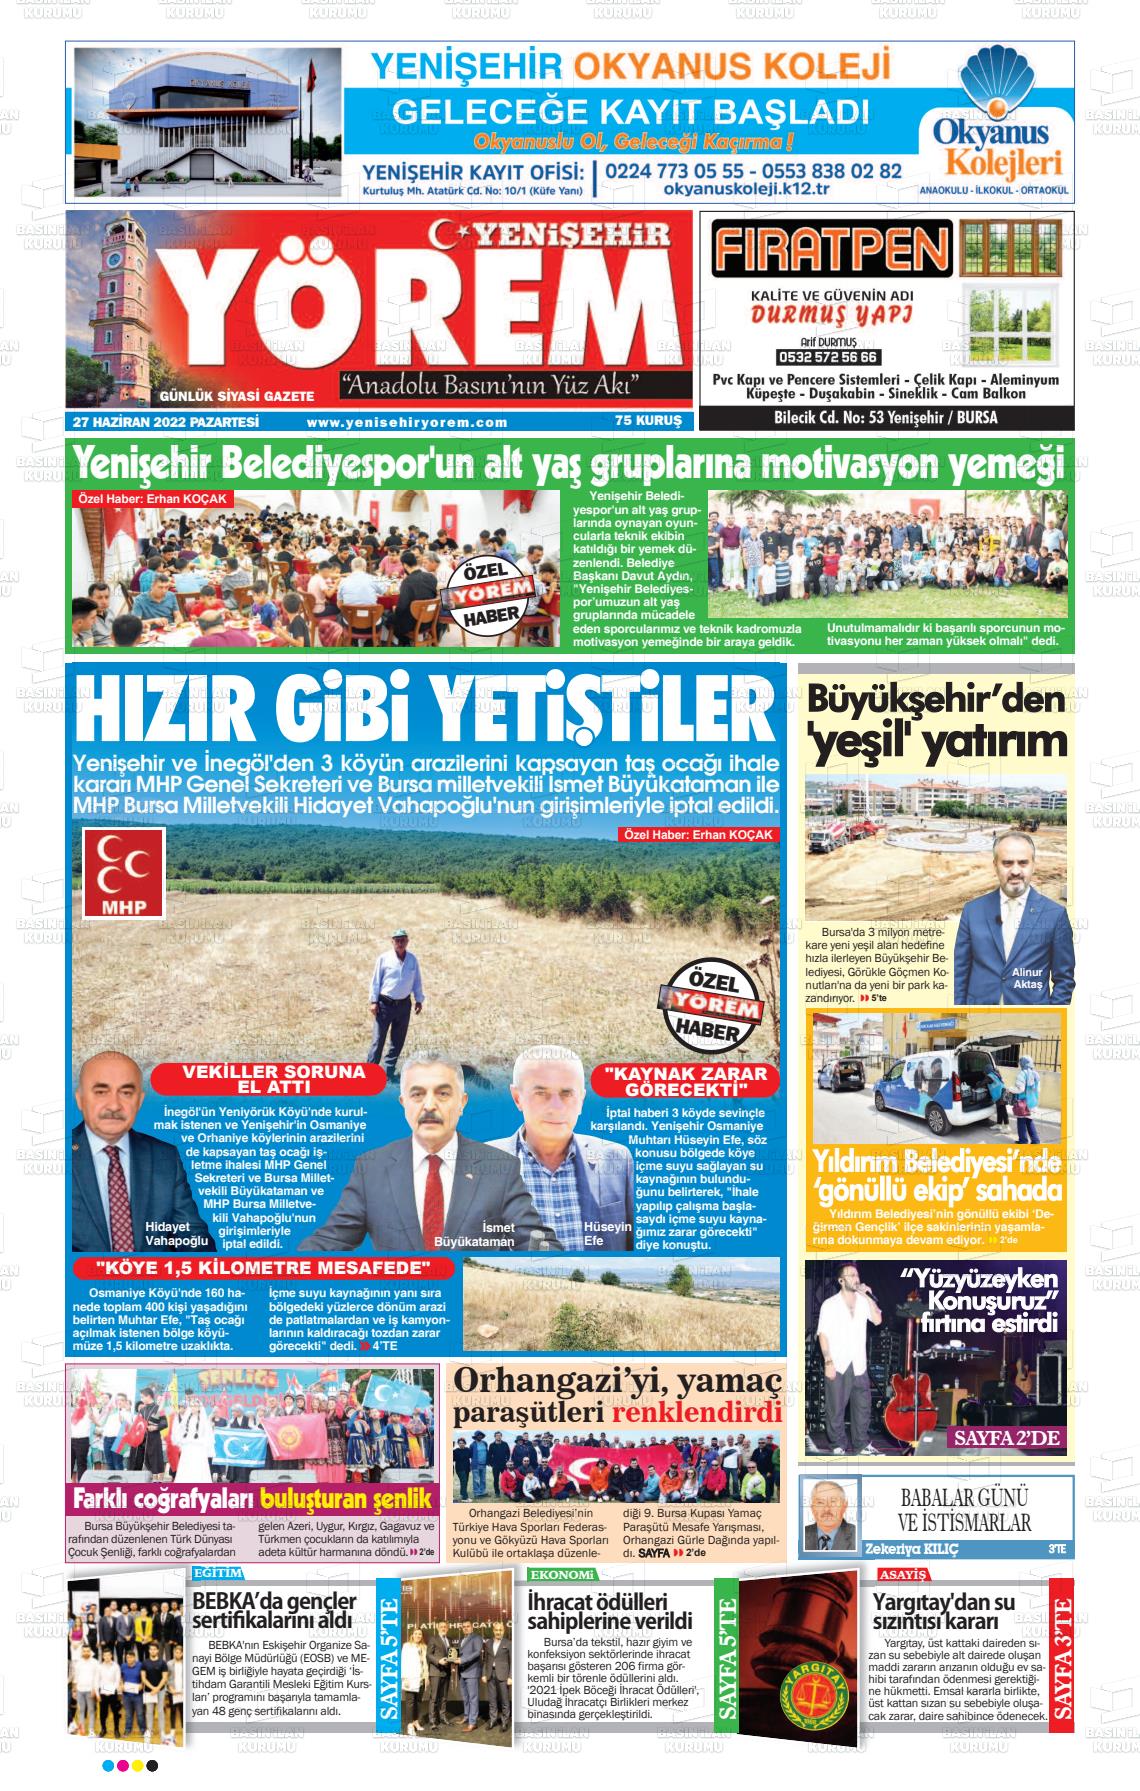 27 Haziran 2022 Yenişehir Yörem Gazete Manşeti